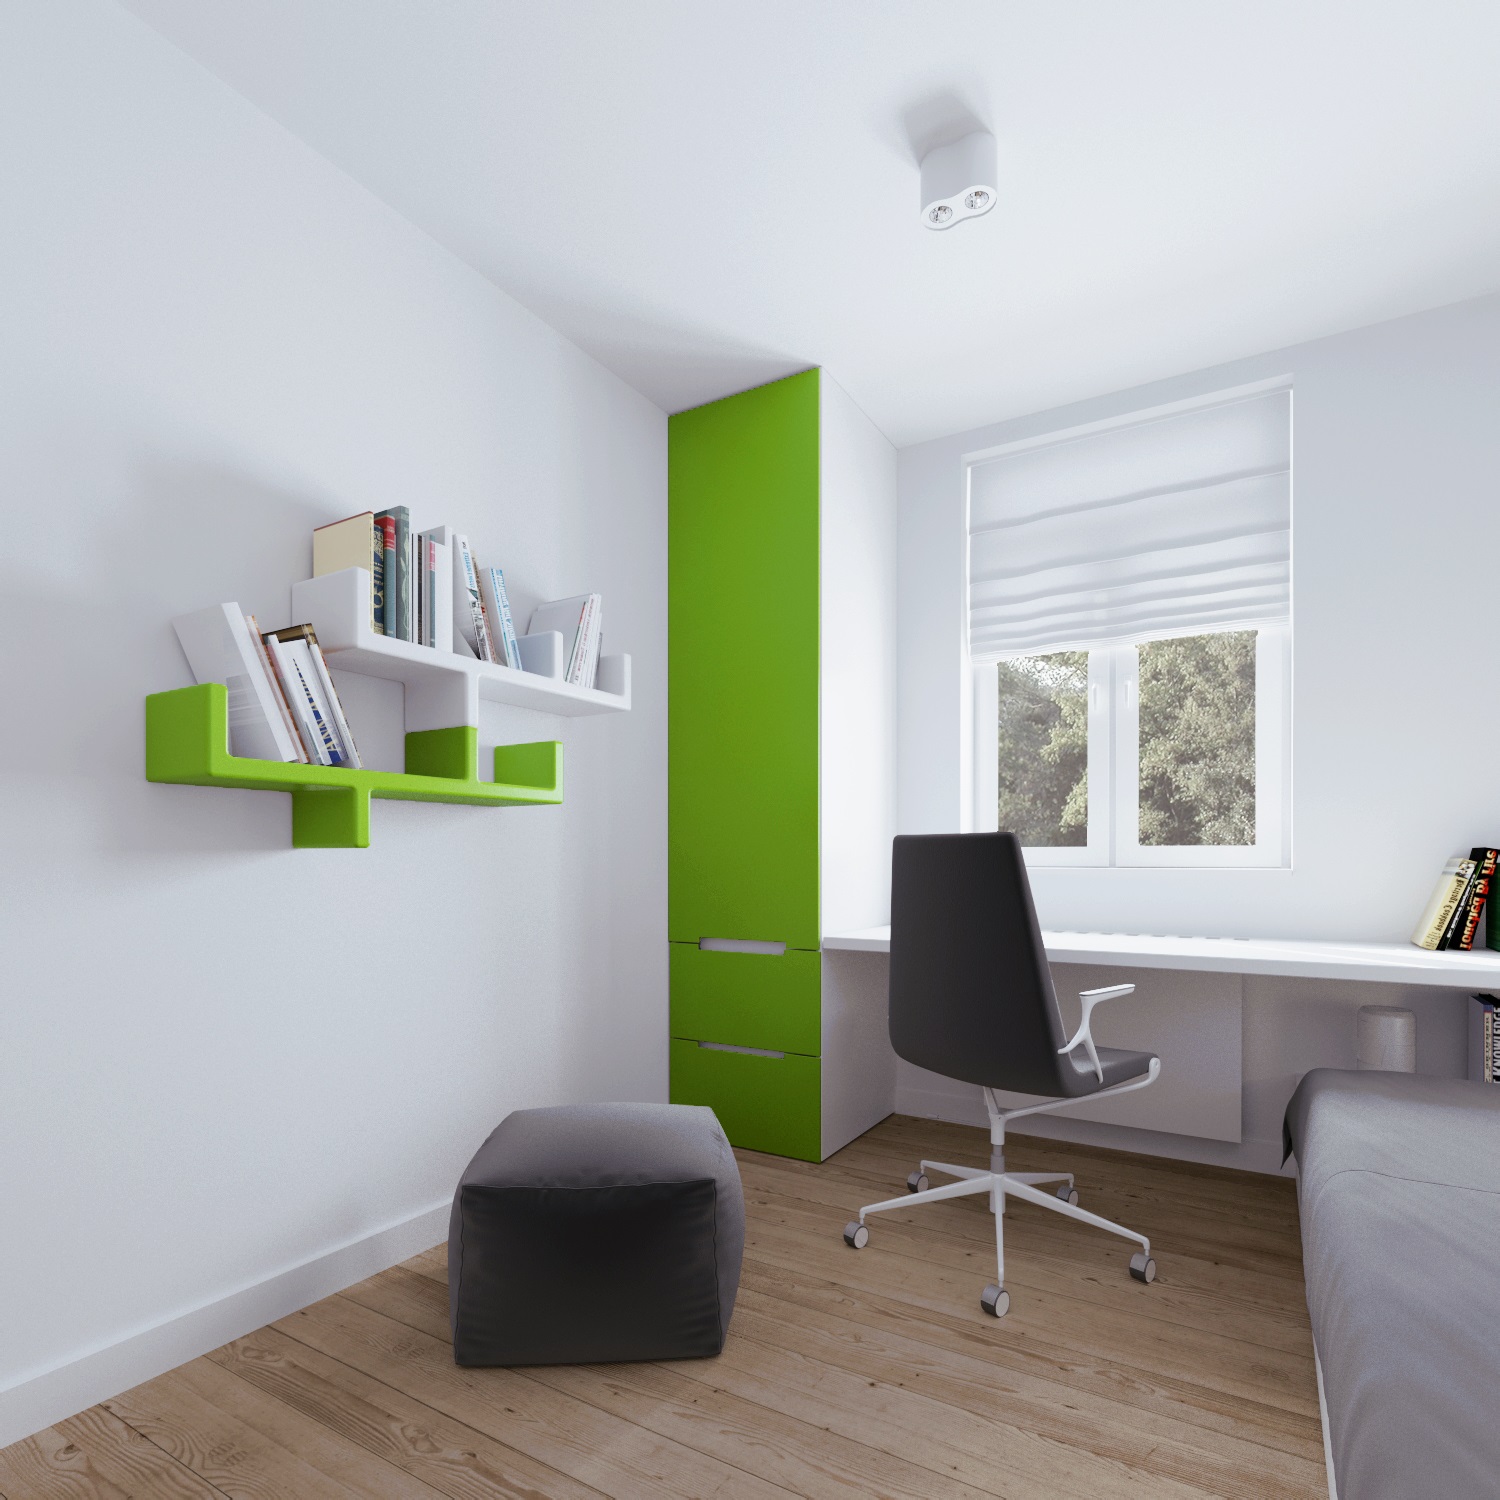 Wedo thiết kế nội thất thông minh cho căn hộ nhỏ tầng áp mái